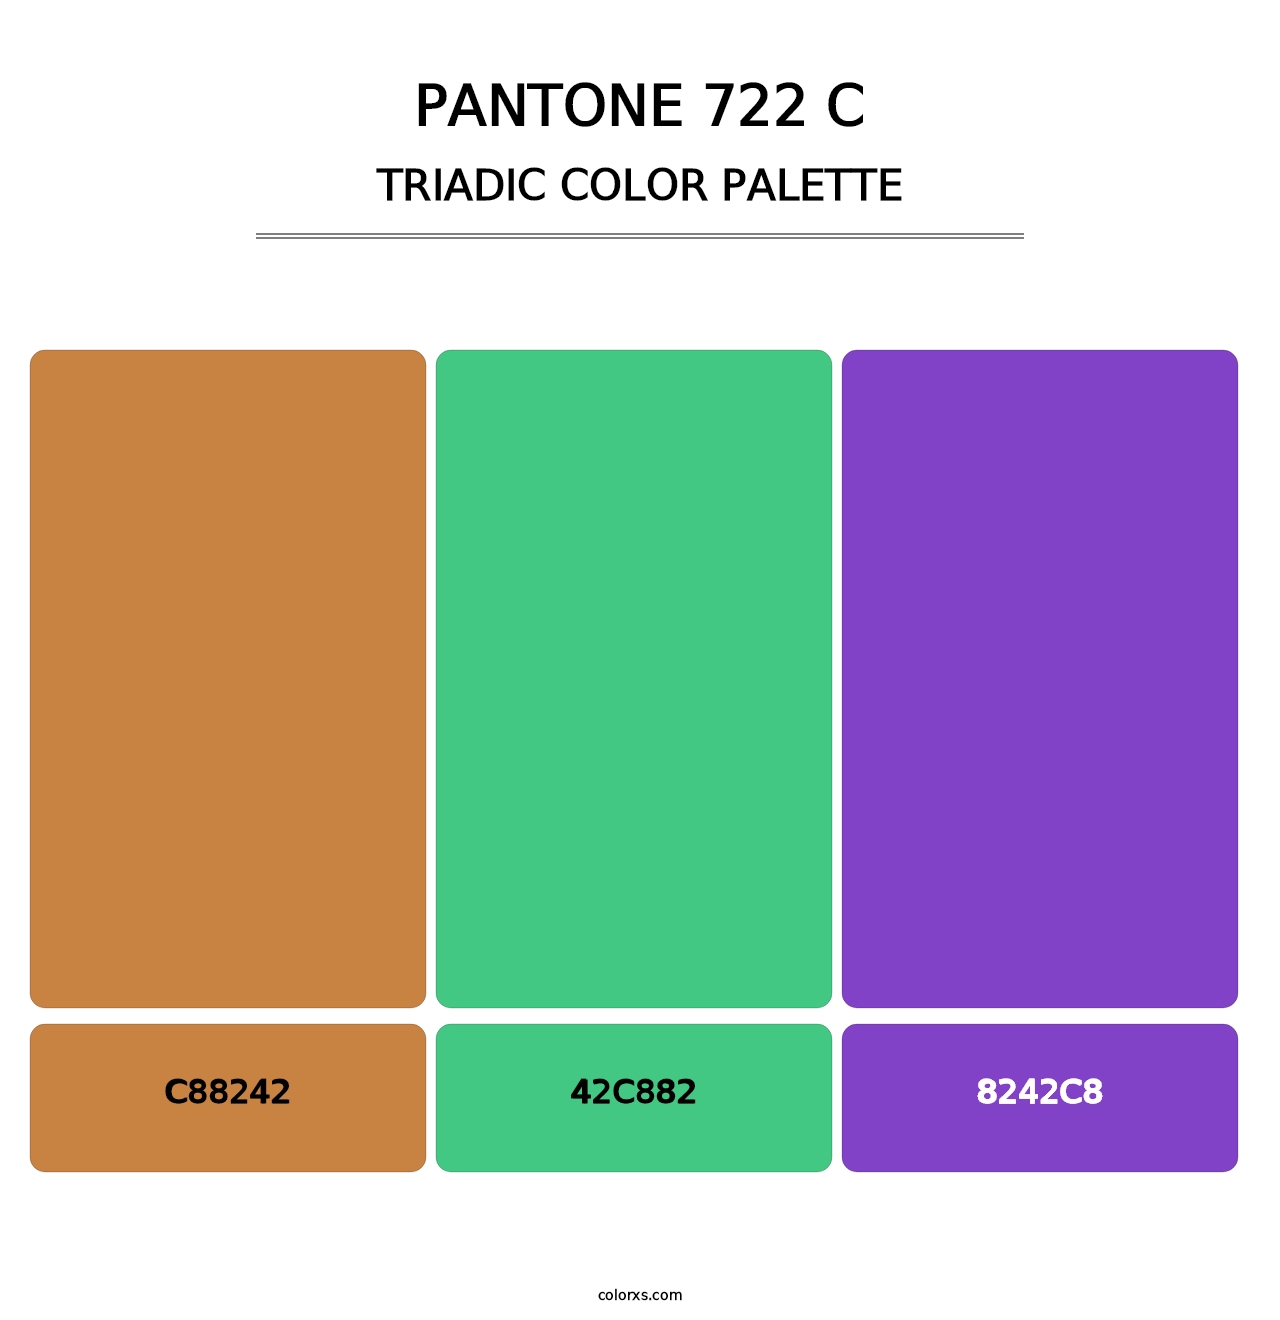 PANTONE 722 C - Triadic Color Palette